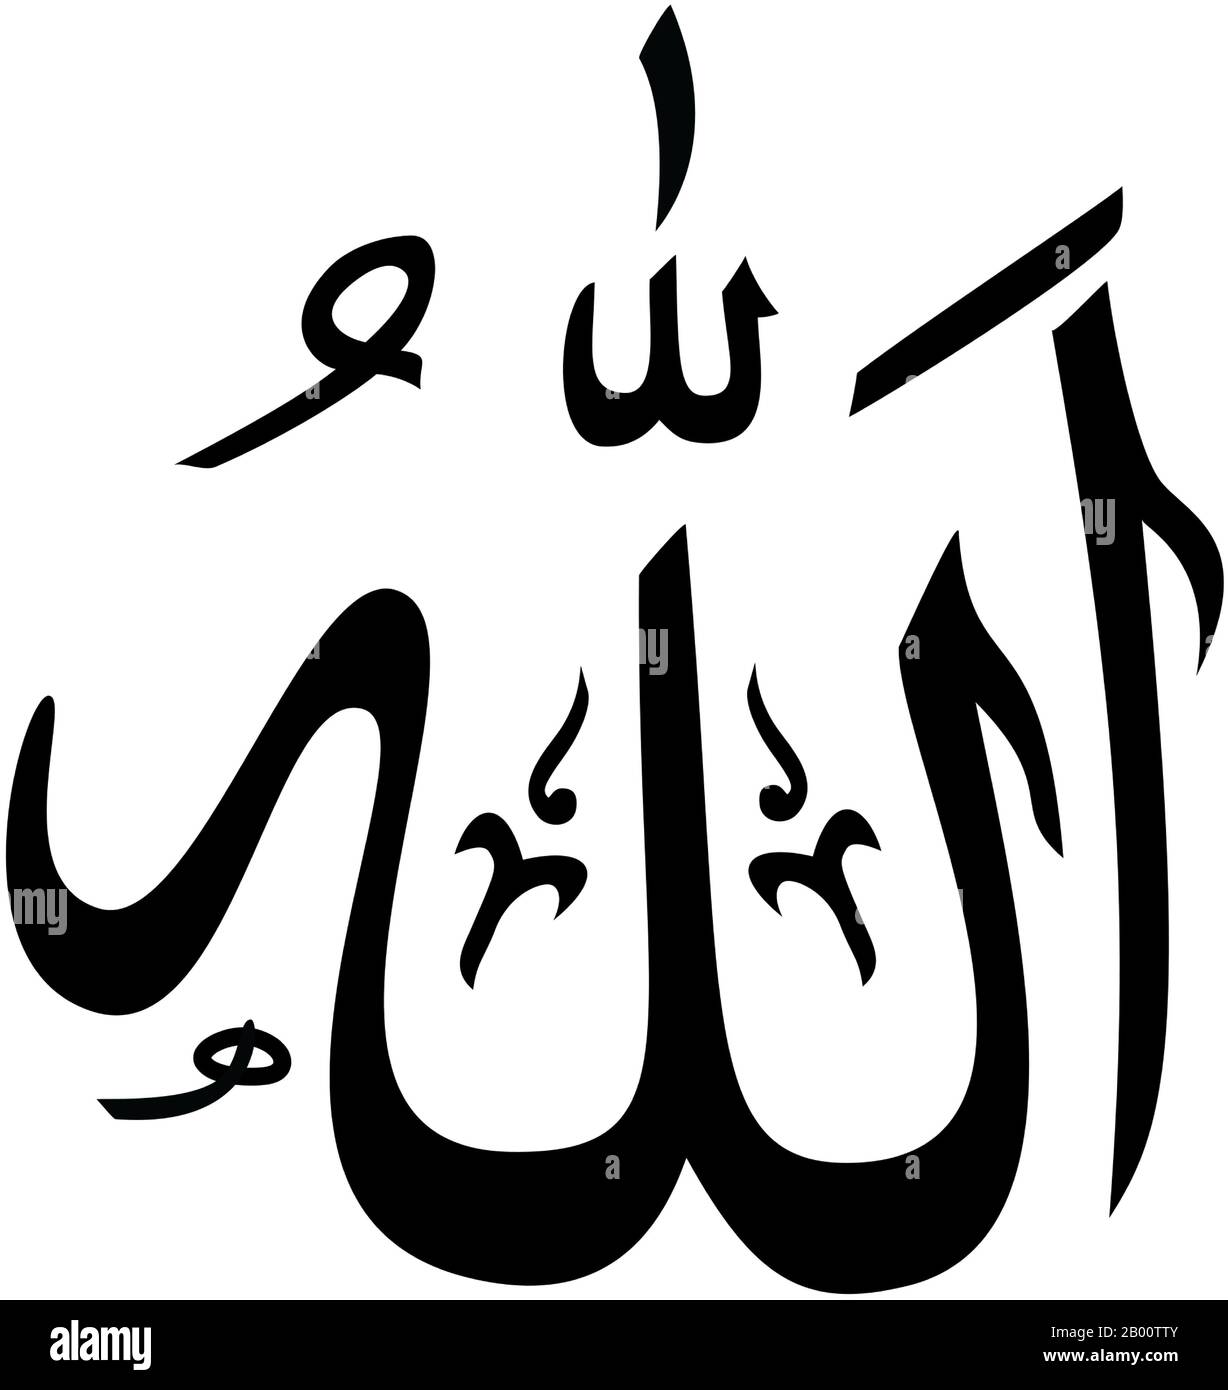 Islam: Il nome di Allah o Dio in arabo script. Allah è il nome arabo standard di Dio. Mentre il termine è più conosciuto in Occidente per il suo uso da parte dei musulmani come riferimento a Dio, è usato dagli arabi di tutte le fedi abrahamic, compreso gli ebrei ed i cristiani (e più recentemente Bahai), in riferimento a Dio. Foto Stock